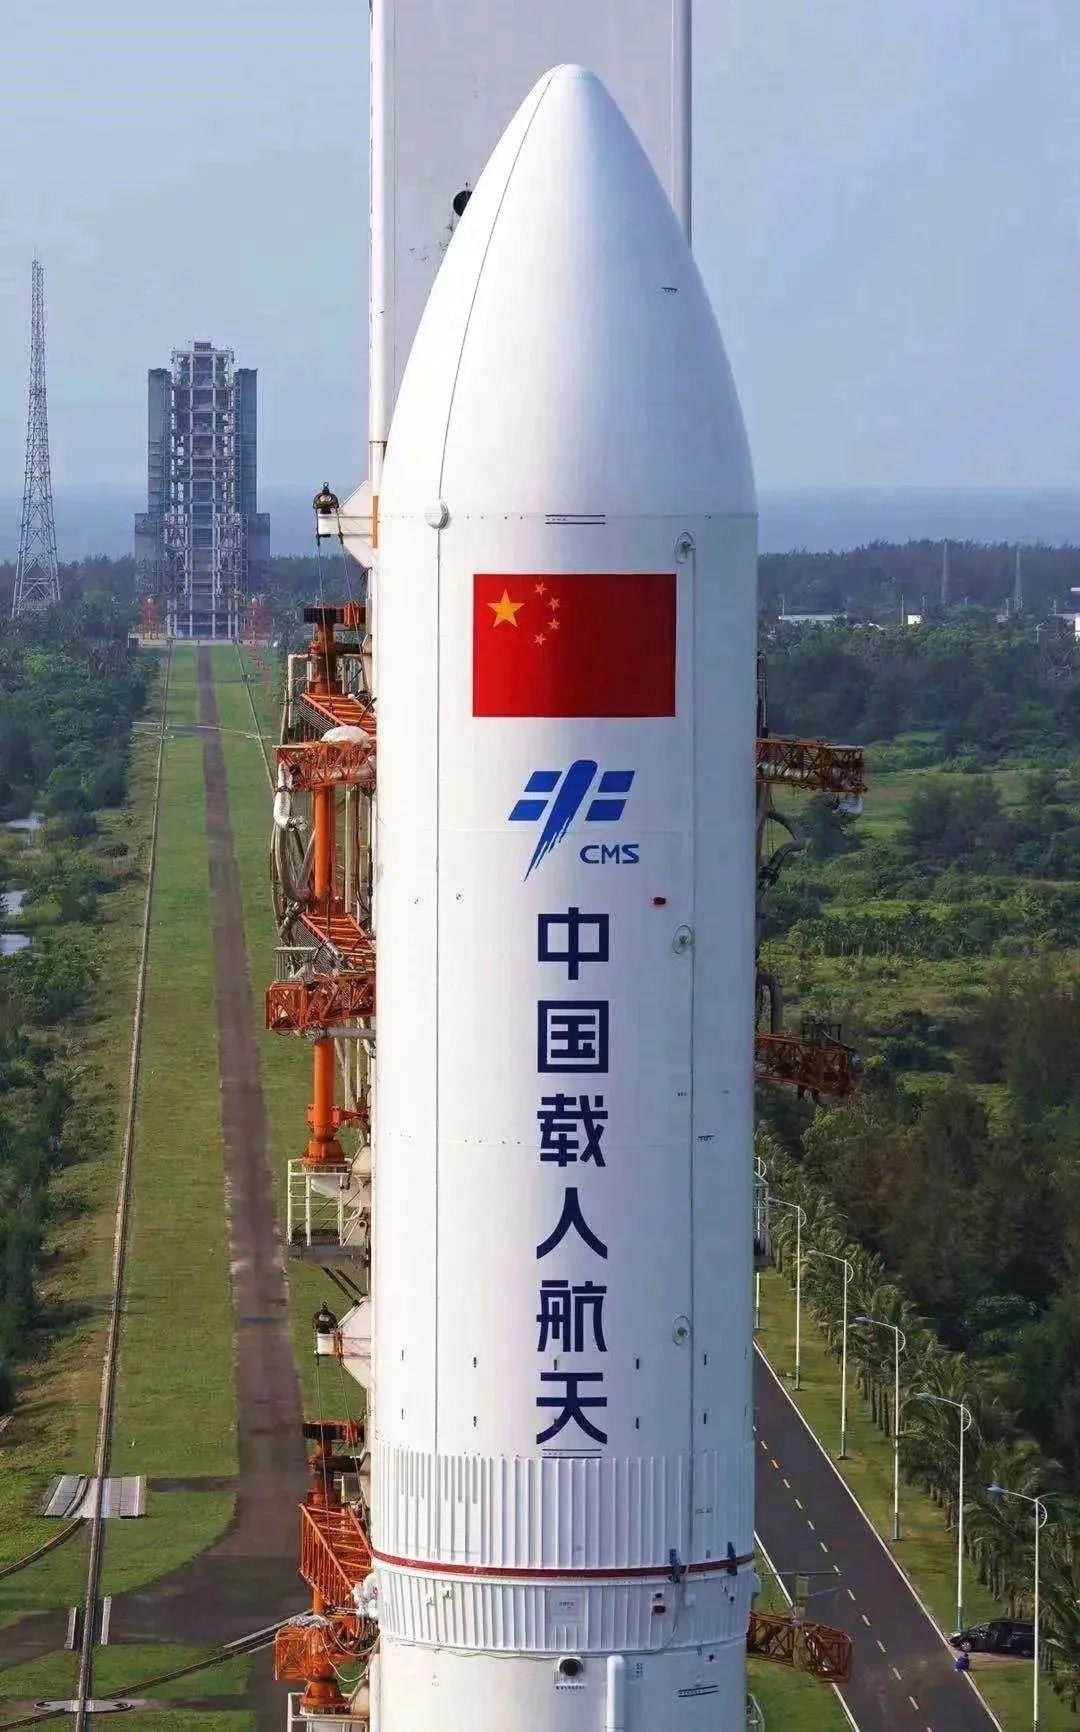 升空送入预定轨道从文昌航天发射场均由该型号运载火箭梦天实验舱问天